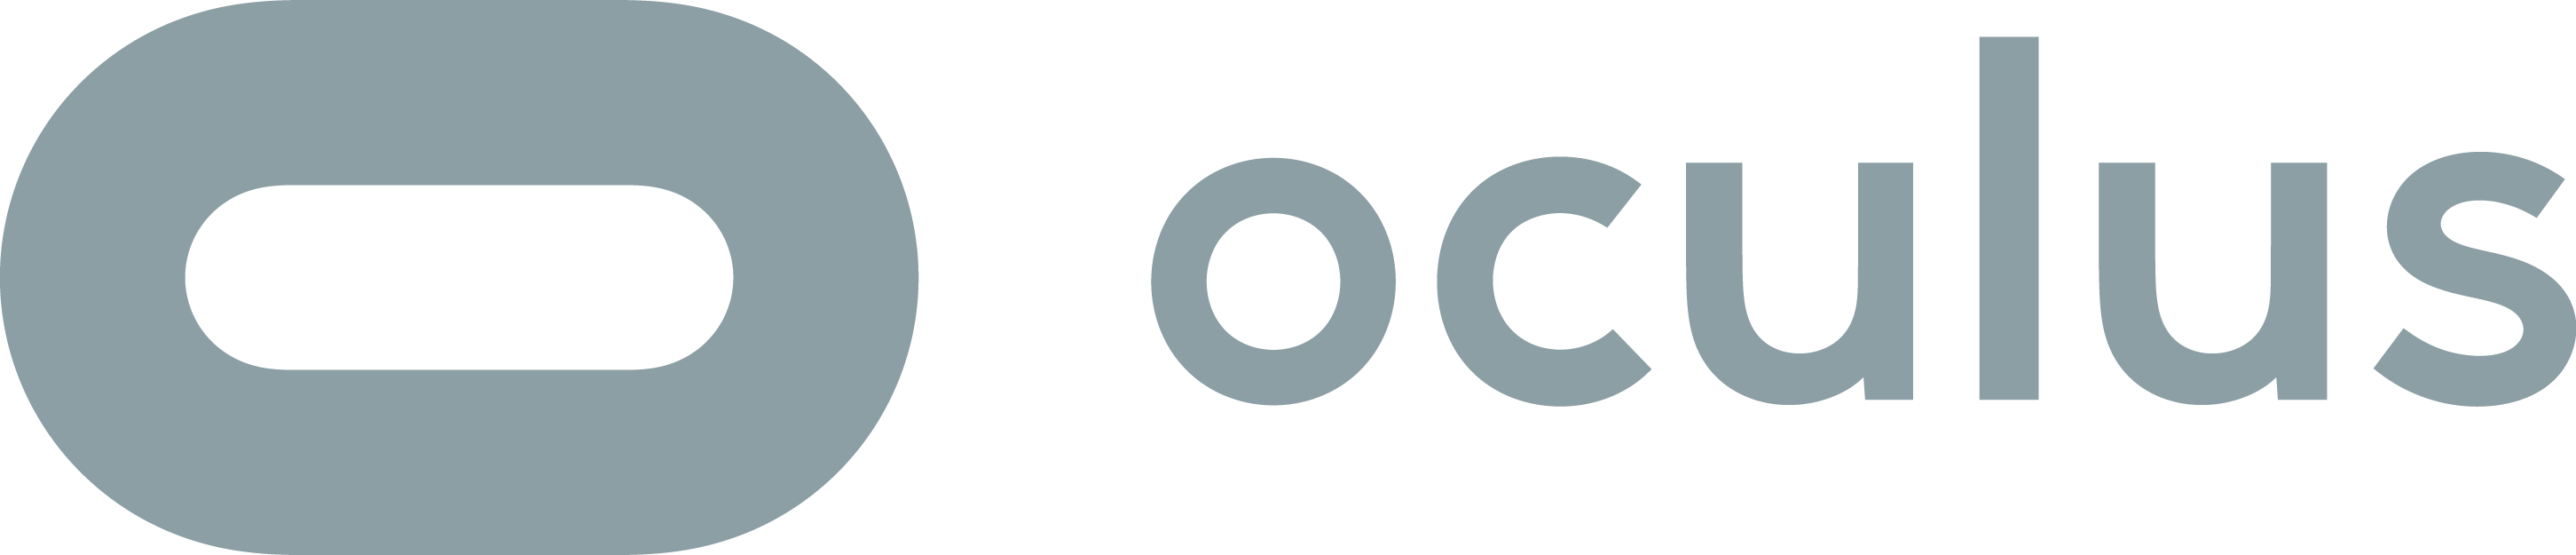 Oculus VR by Facebook Logo